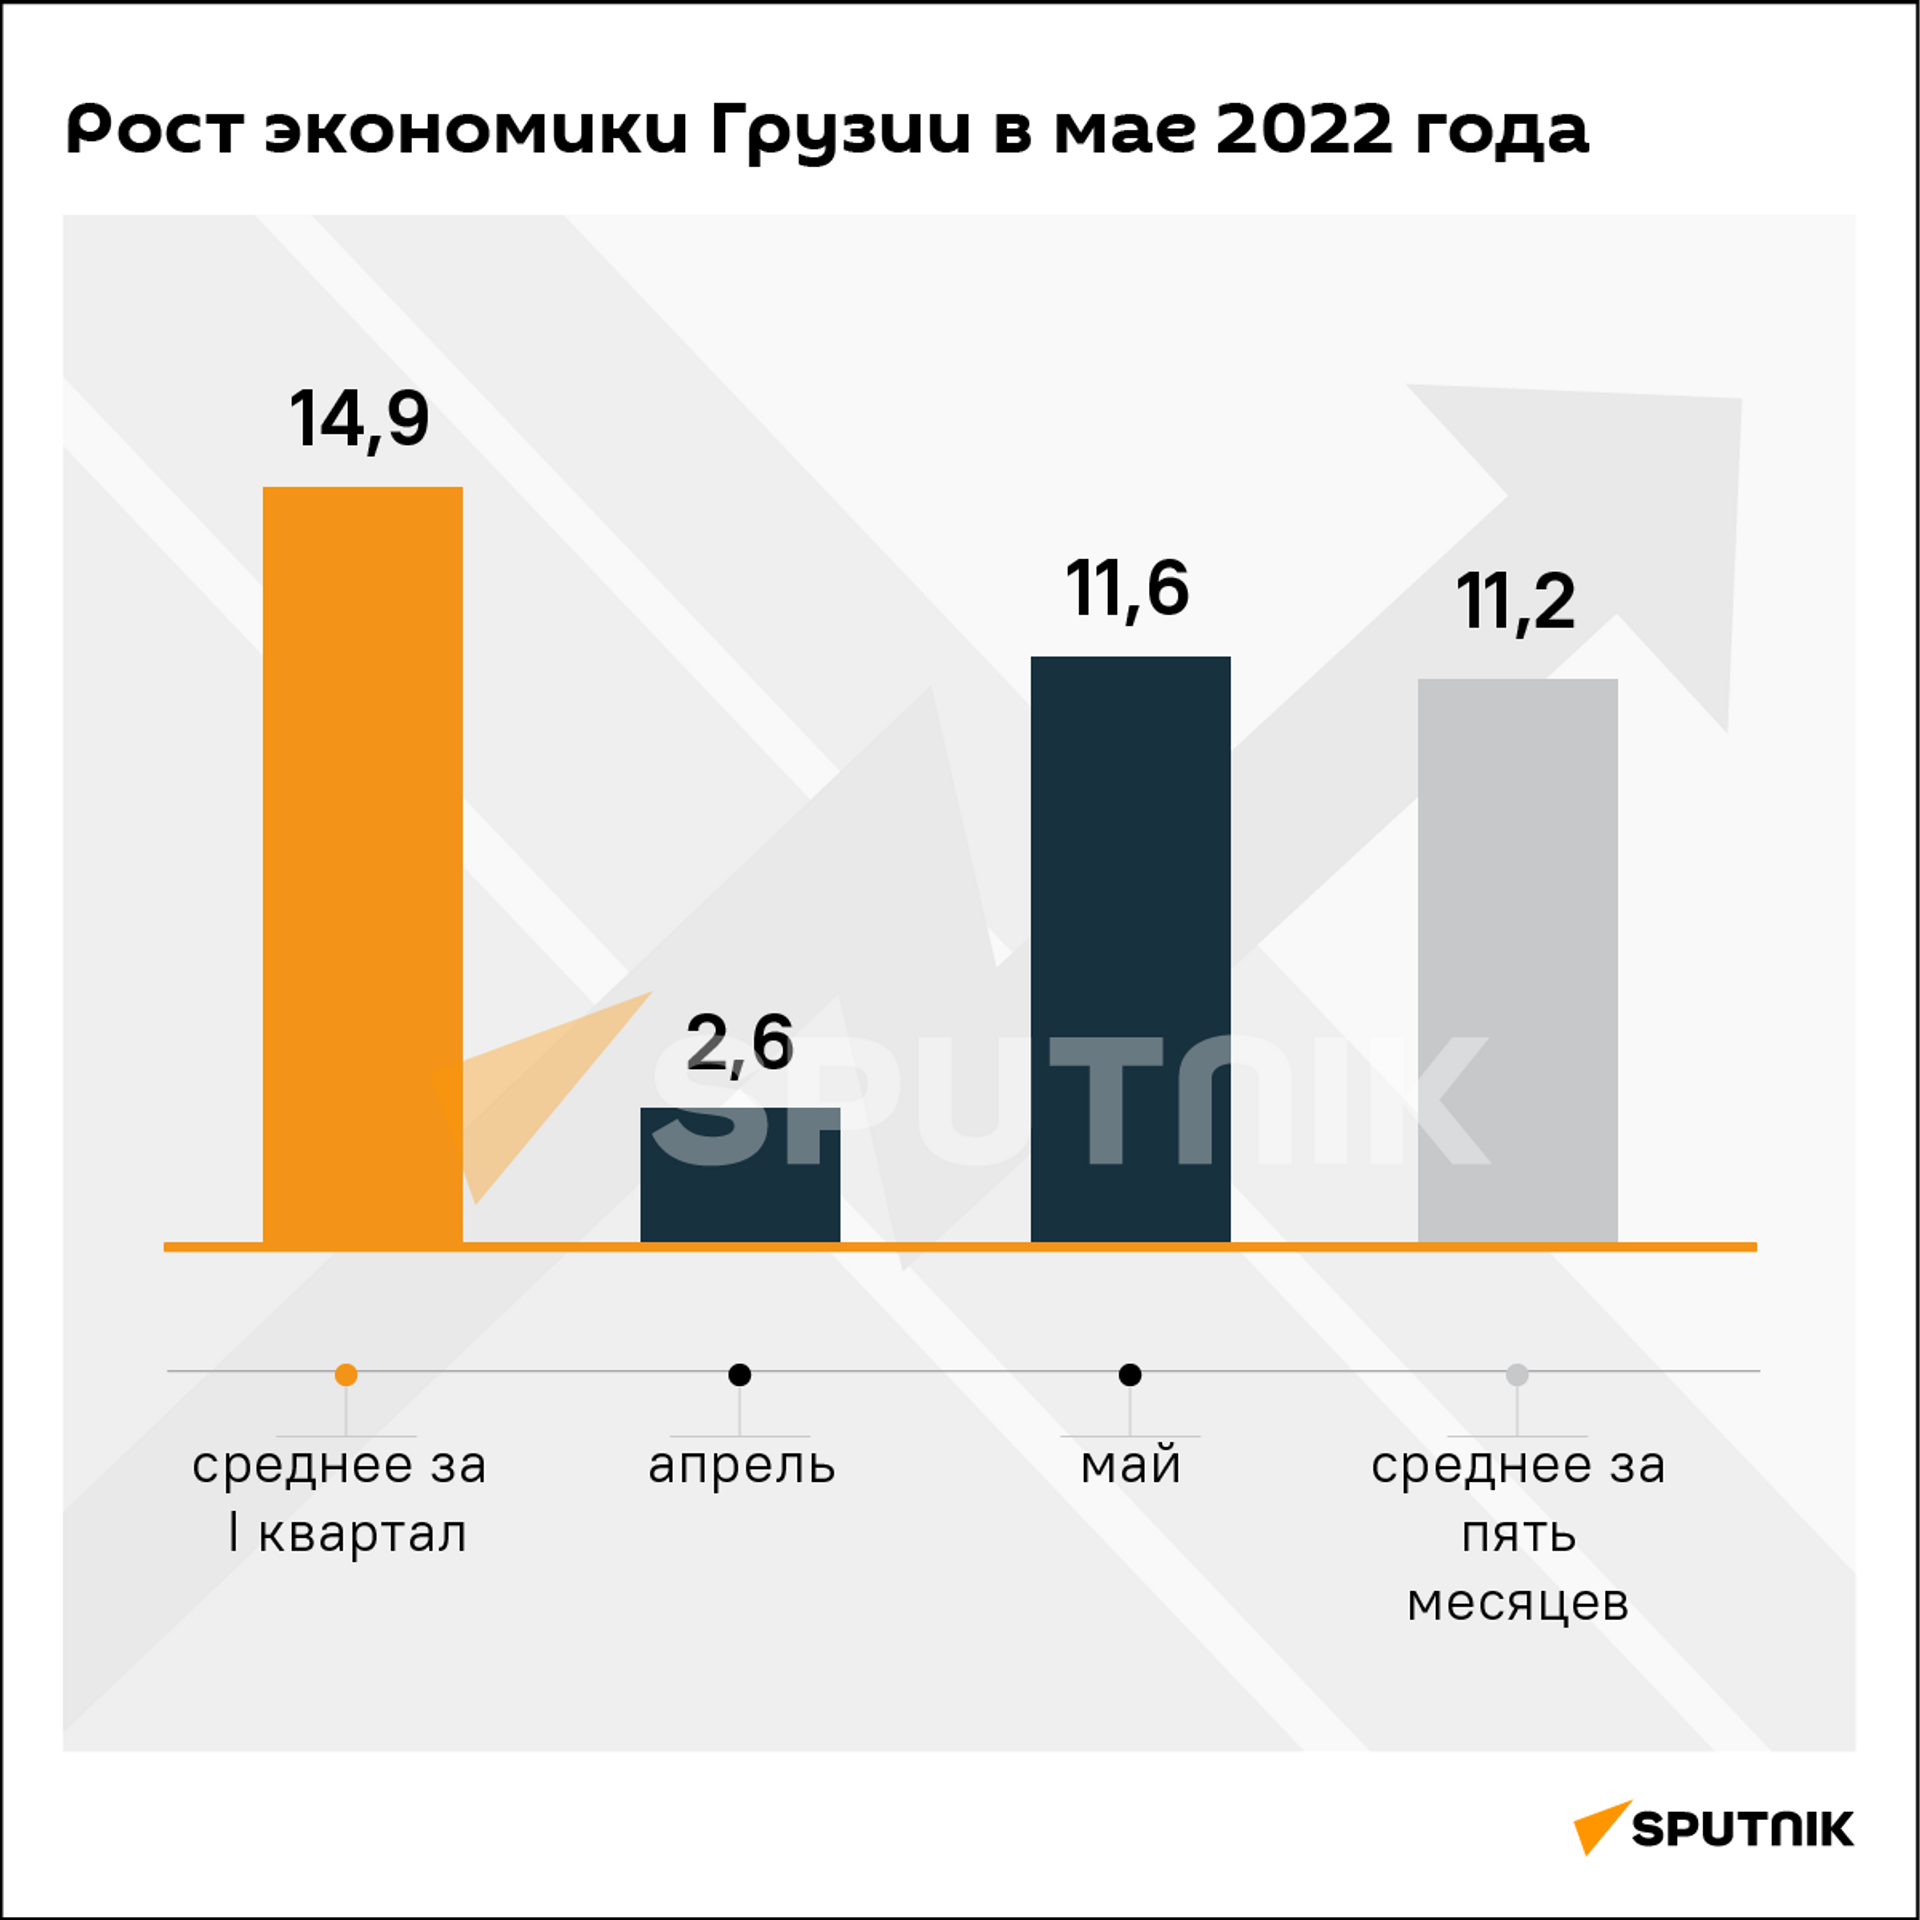 Экономический рост Грузии за май и пять месяцев 2022 года - Sputnik Грузия, 1920, 11.07.2022